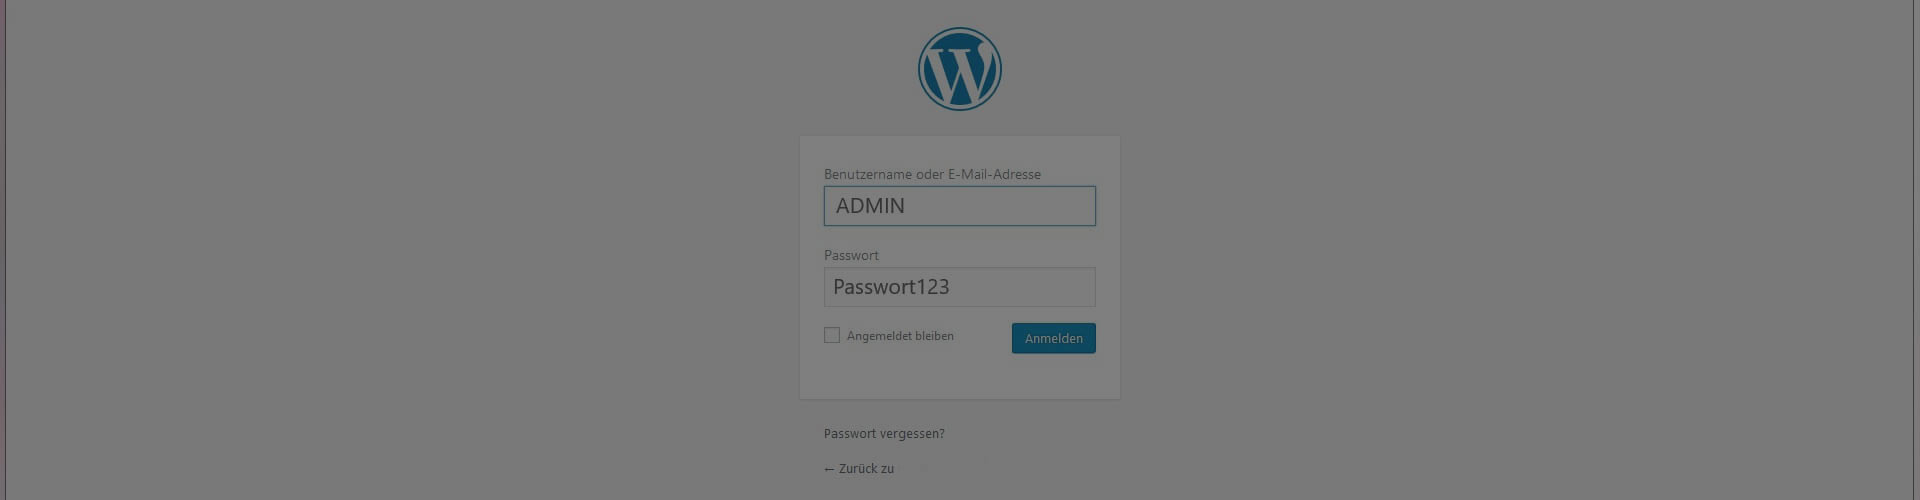 Wordpress-sicherer-machen-passwort